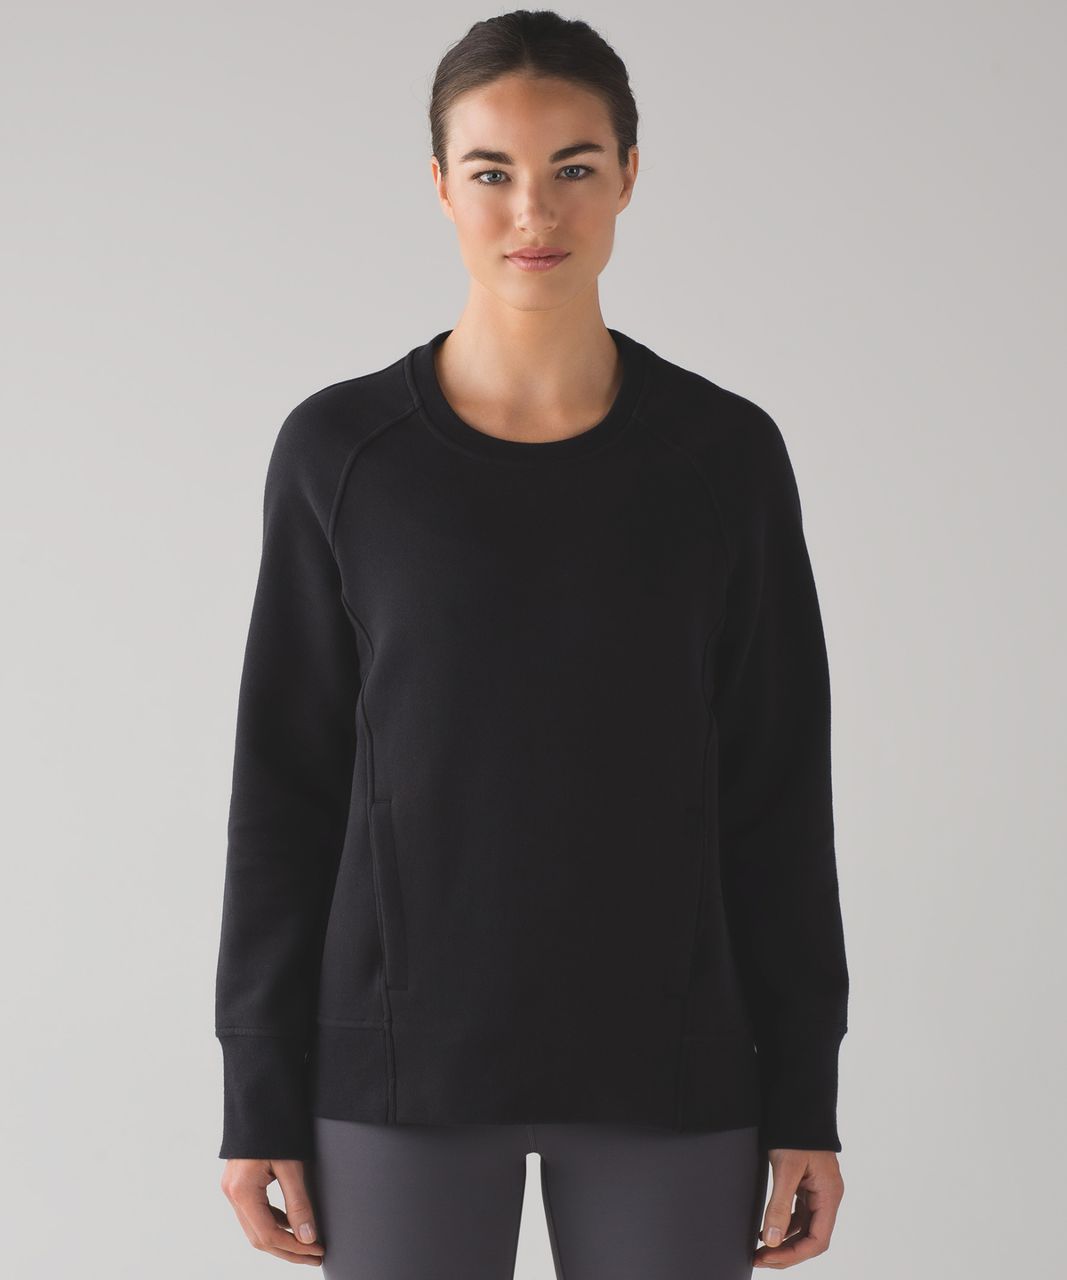 Lululemon Twist Back-to-Front Pullover Black Size 8 LW3ER5S NWT $199  ⚫️👀🍋⭐️